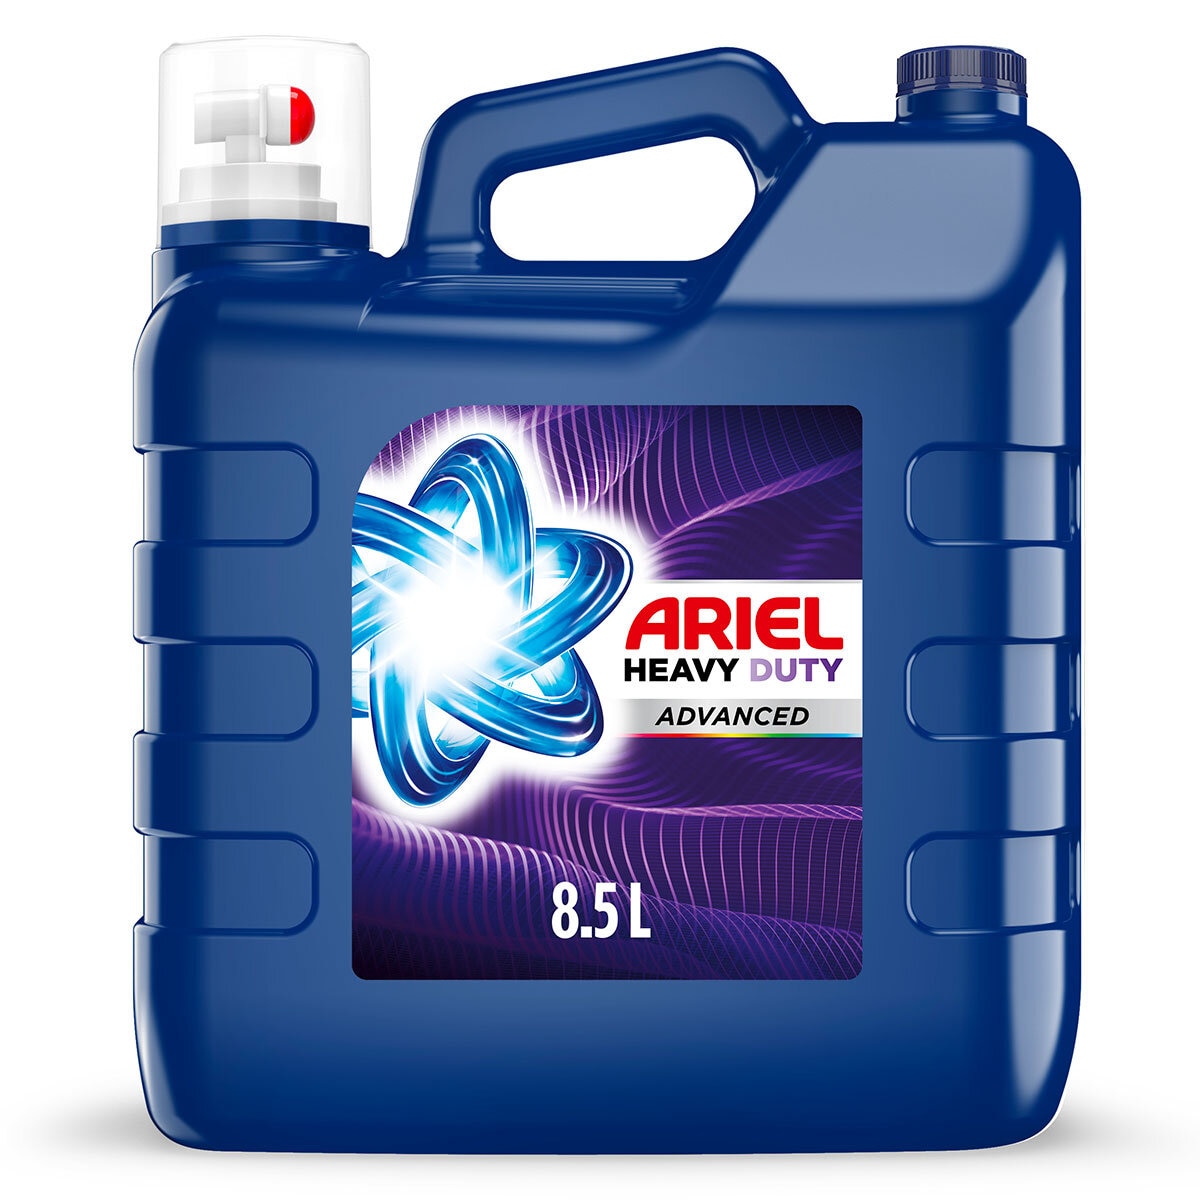 Ariel - Paquete de descuento - 150 cápsulas - Detergente para